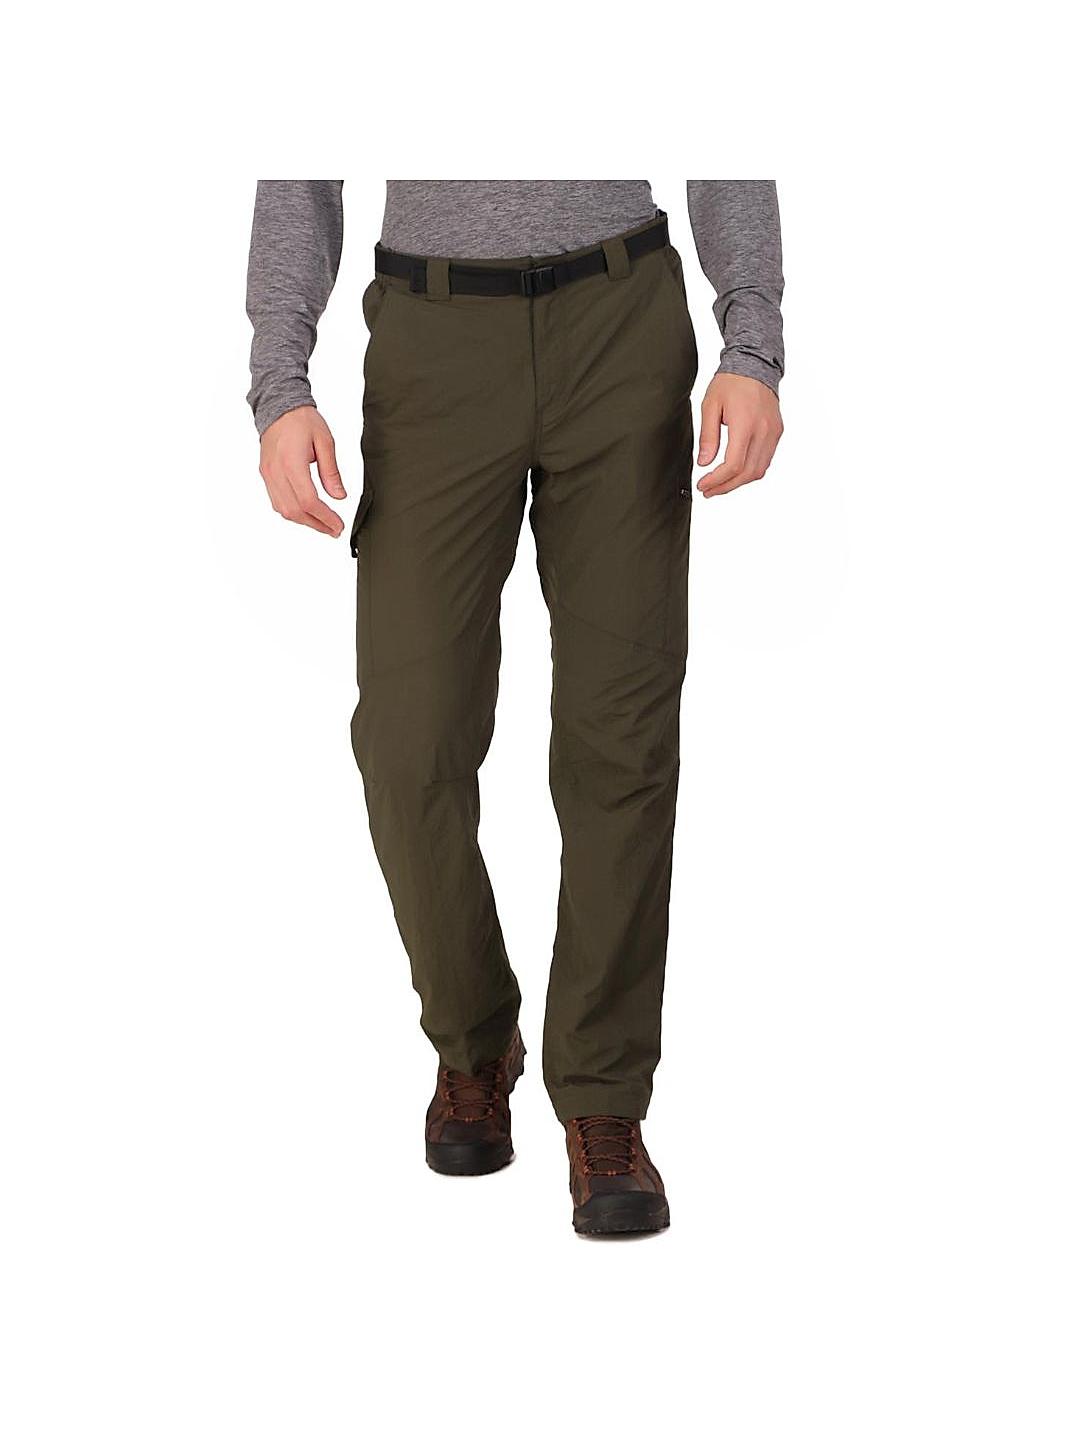 Buy Highlander Cargo Trouser for Men Online at Rs817  Ketch